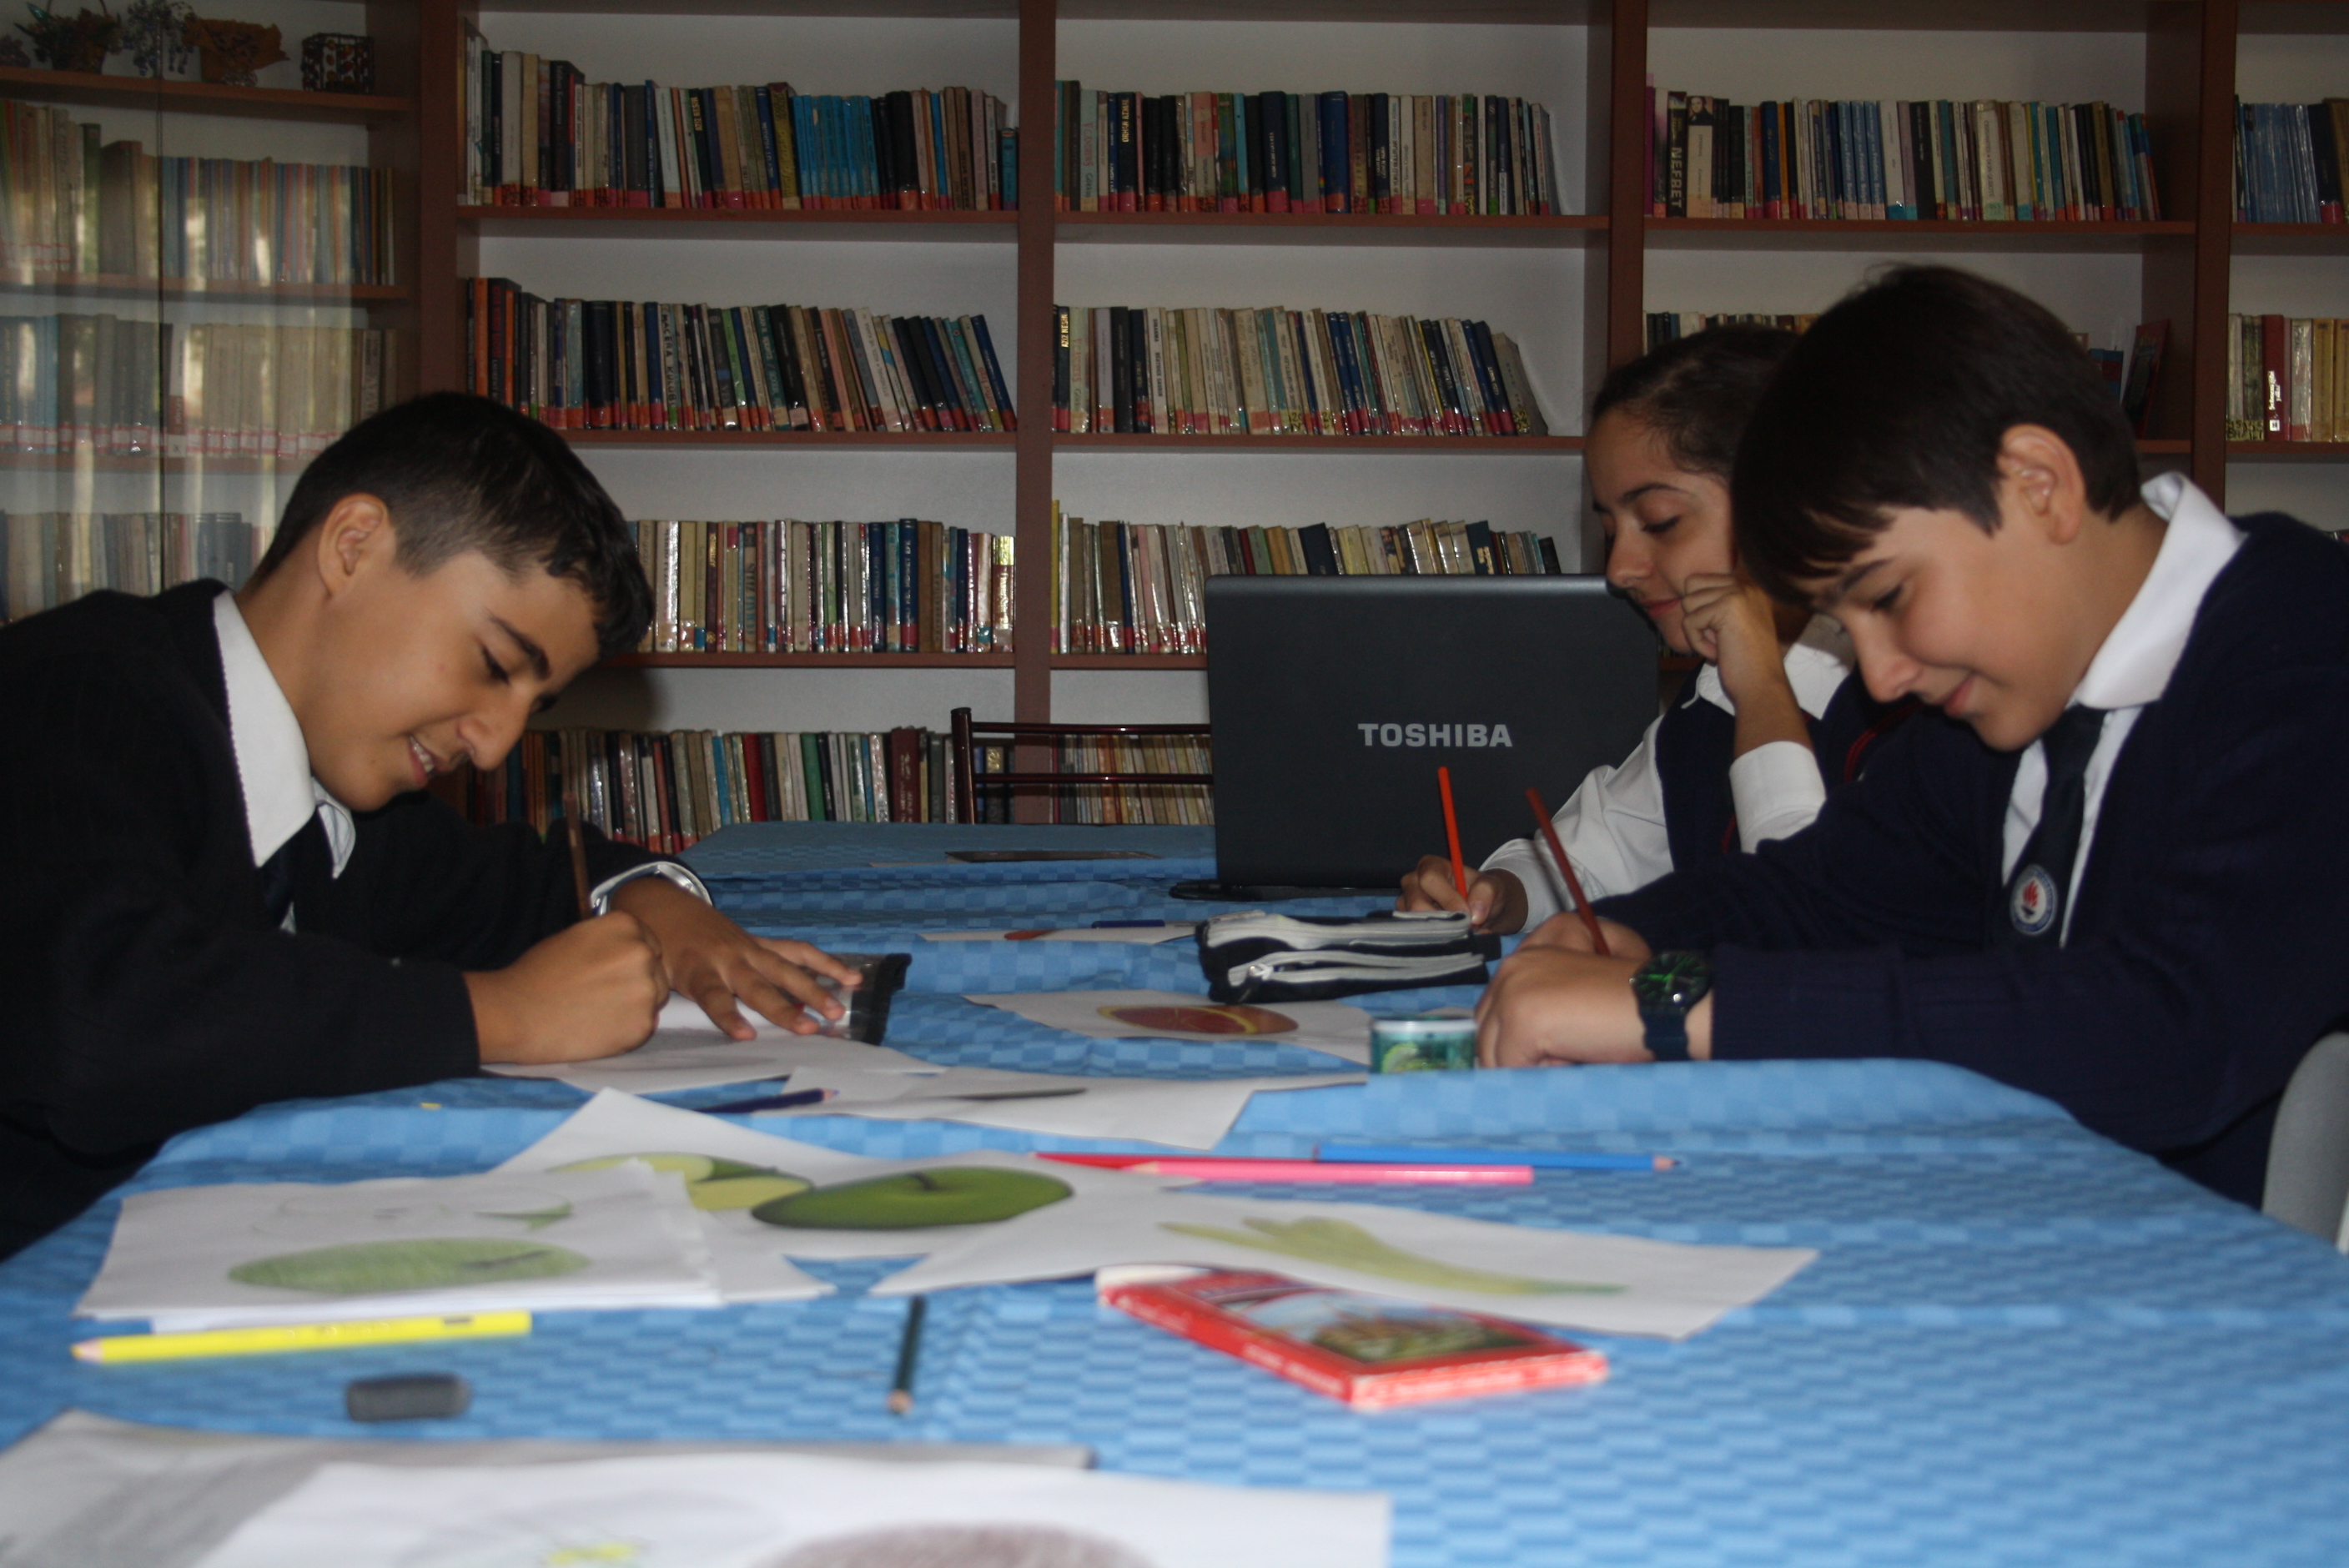 Bilinçli Gençler Derneği - Türkiye Bilinçli Gençlik Projesi - "SAĞLIK İÇİN EL ELE" - Hacı Şakir Eczacıbaşı İlköğretim Okulu - İZMİR